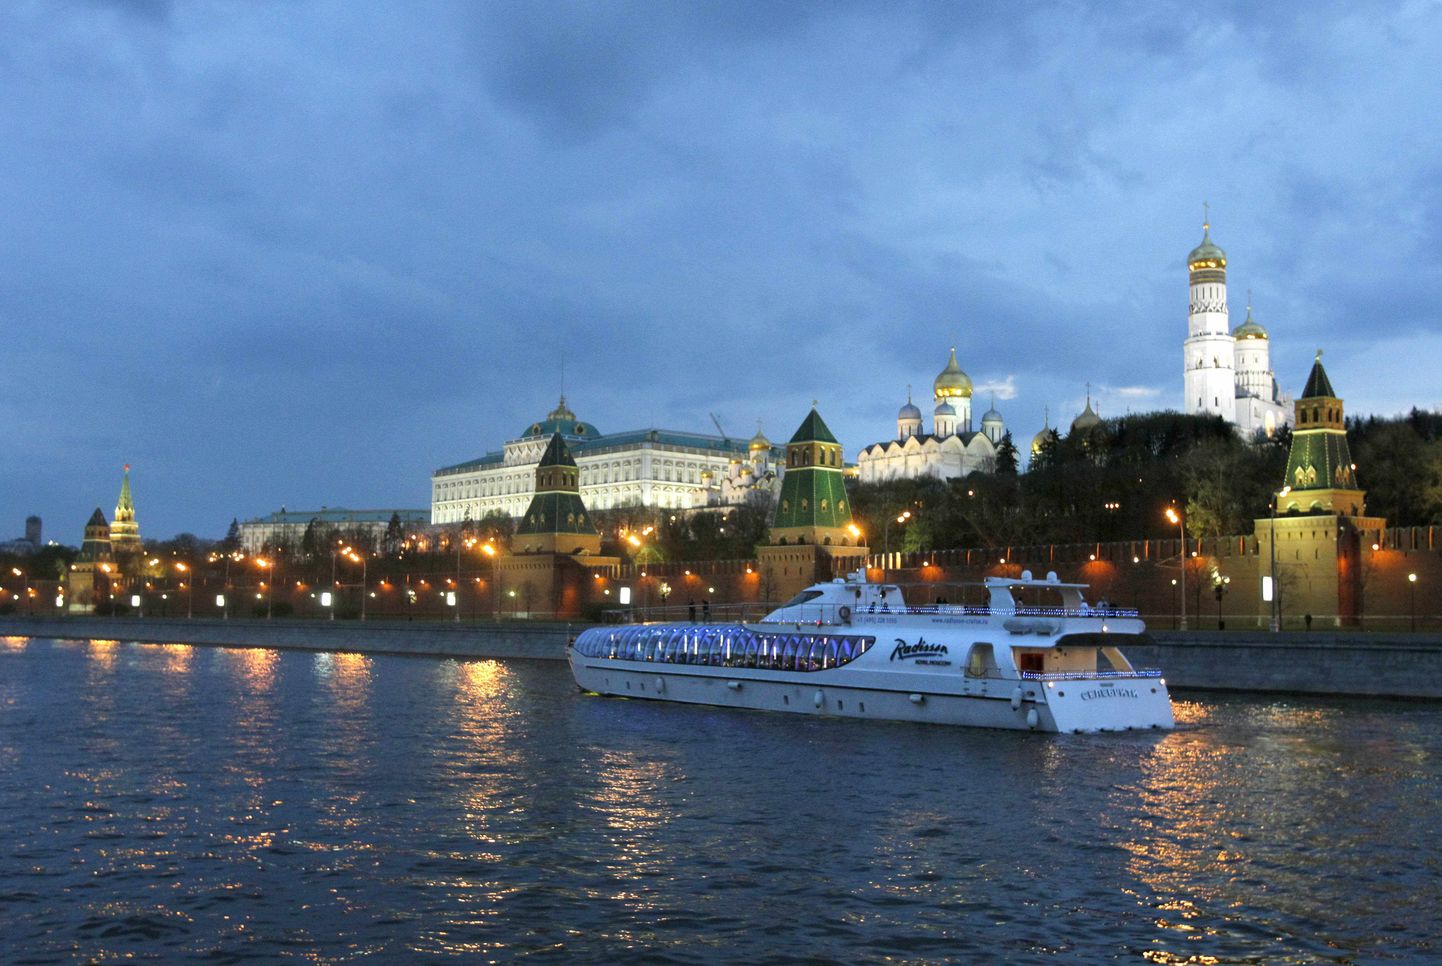 Moskva jõgi. Tagaplaanil paistavad Kremli hooned.